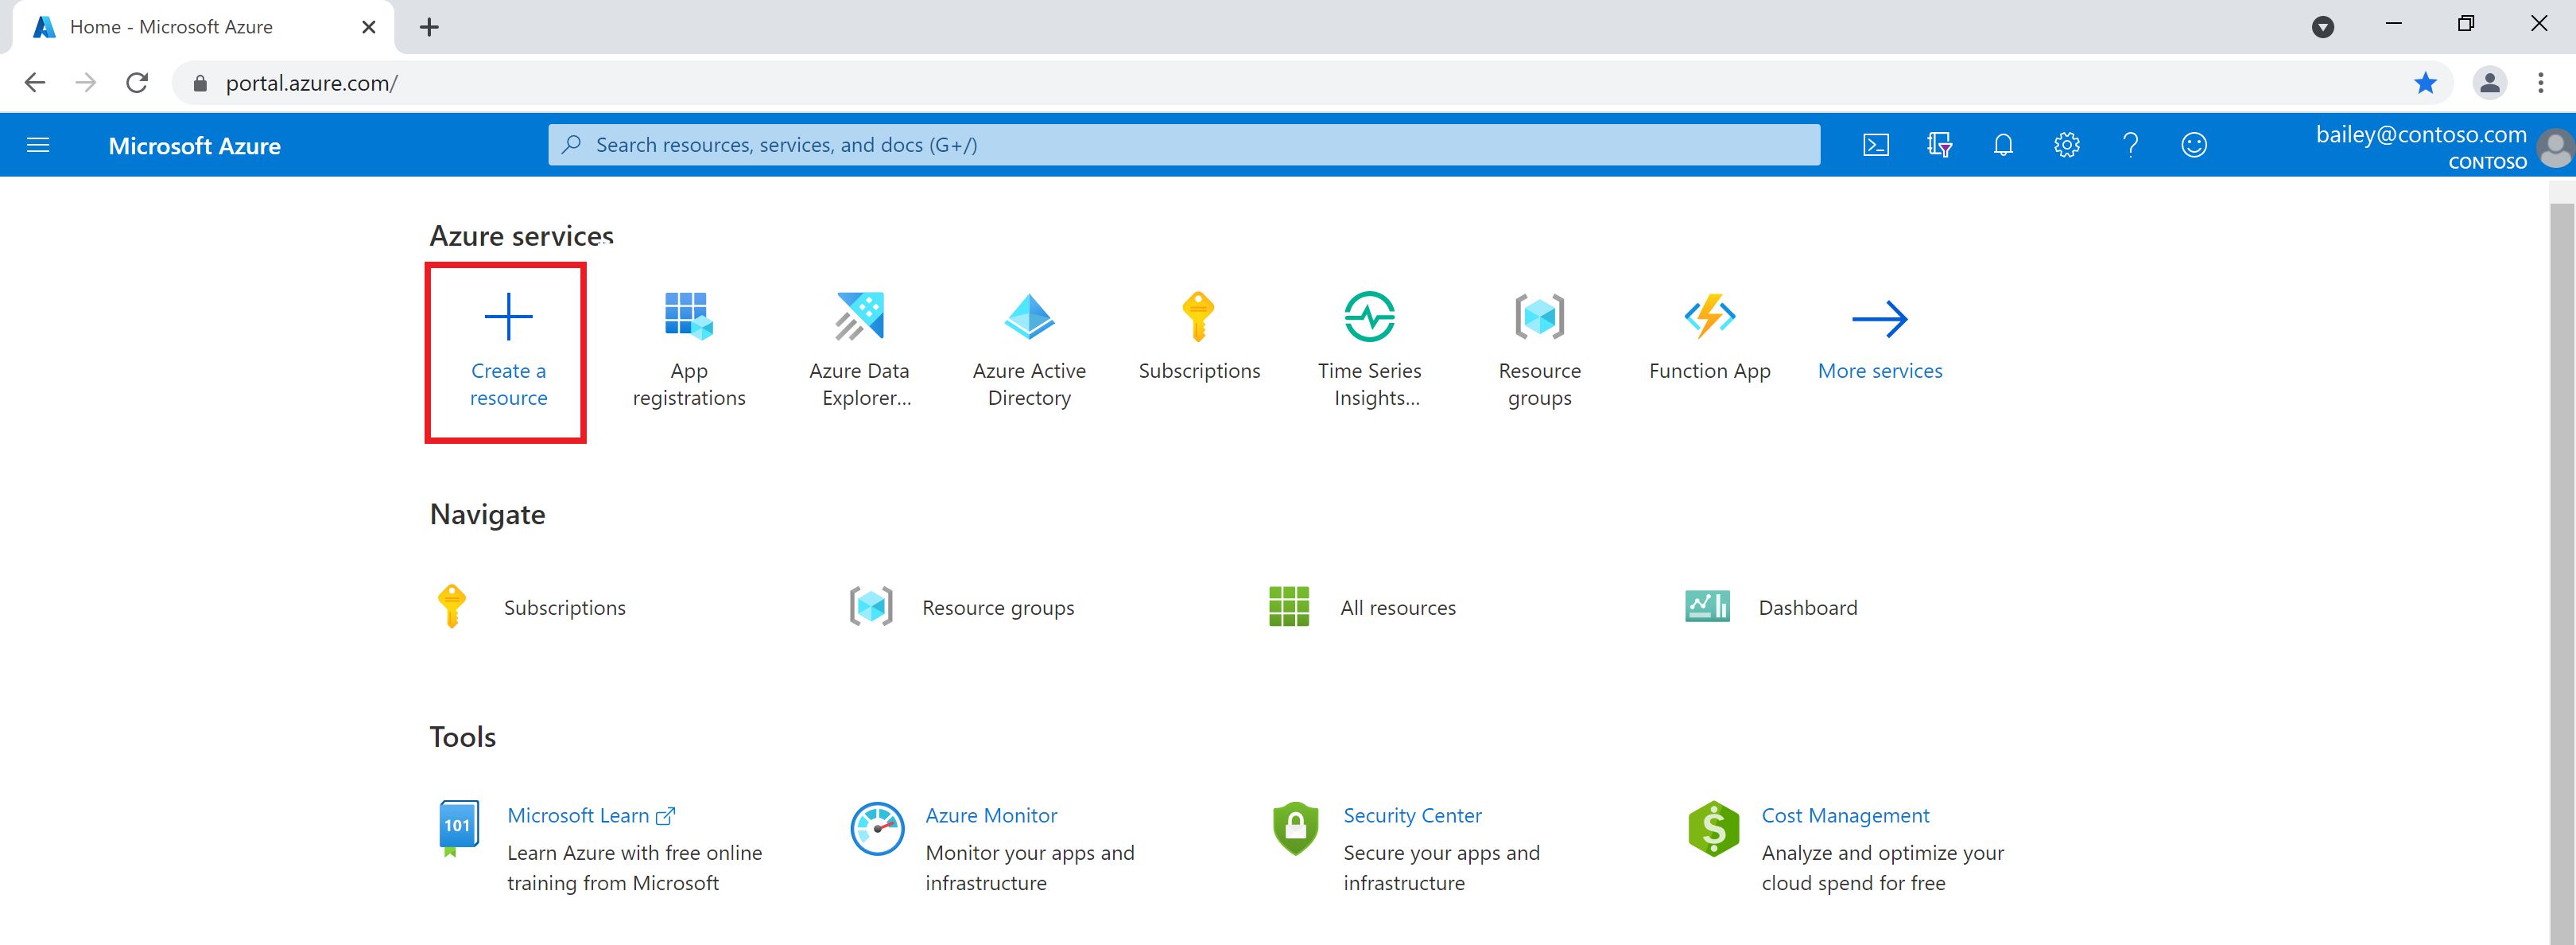 Zrzut ekranu witryny Azure Portal z wyróżnioną ikoną 